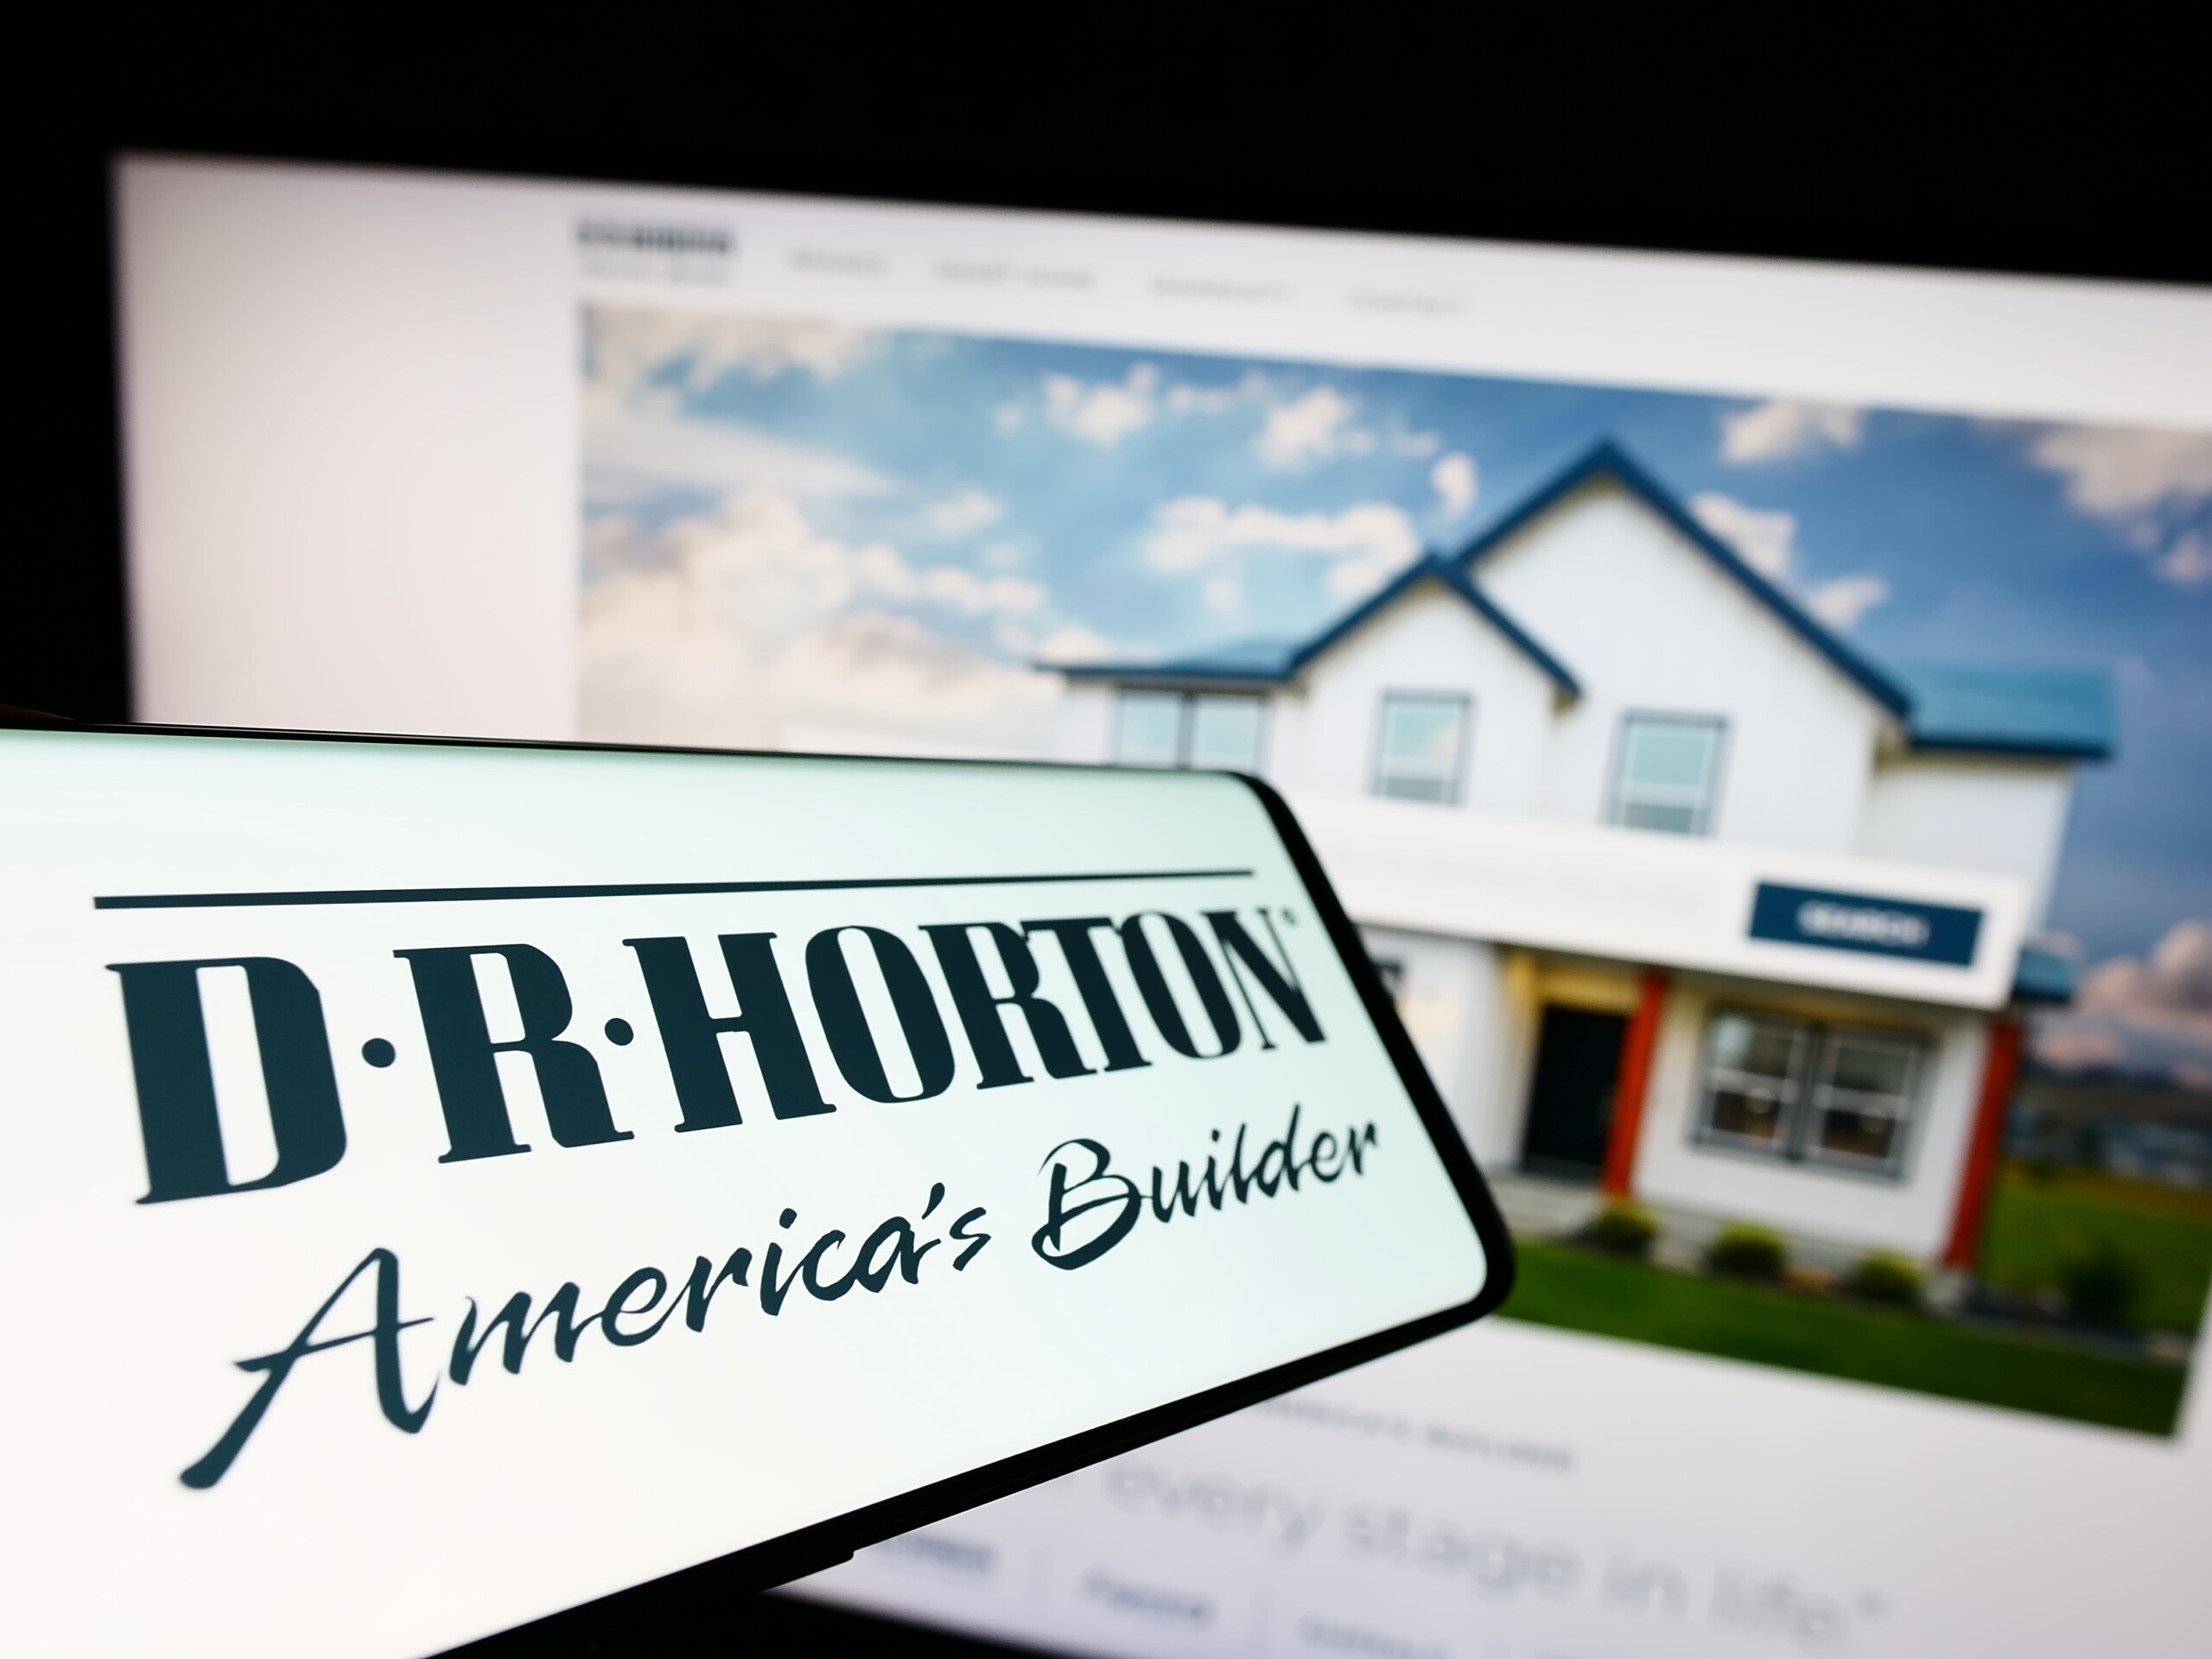 Hohe Zinsen treiben US-Immobilienpreise überraschend auf Rekordniveau – DR Horton als unerwarteter Gewinner